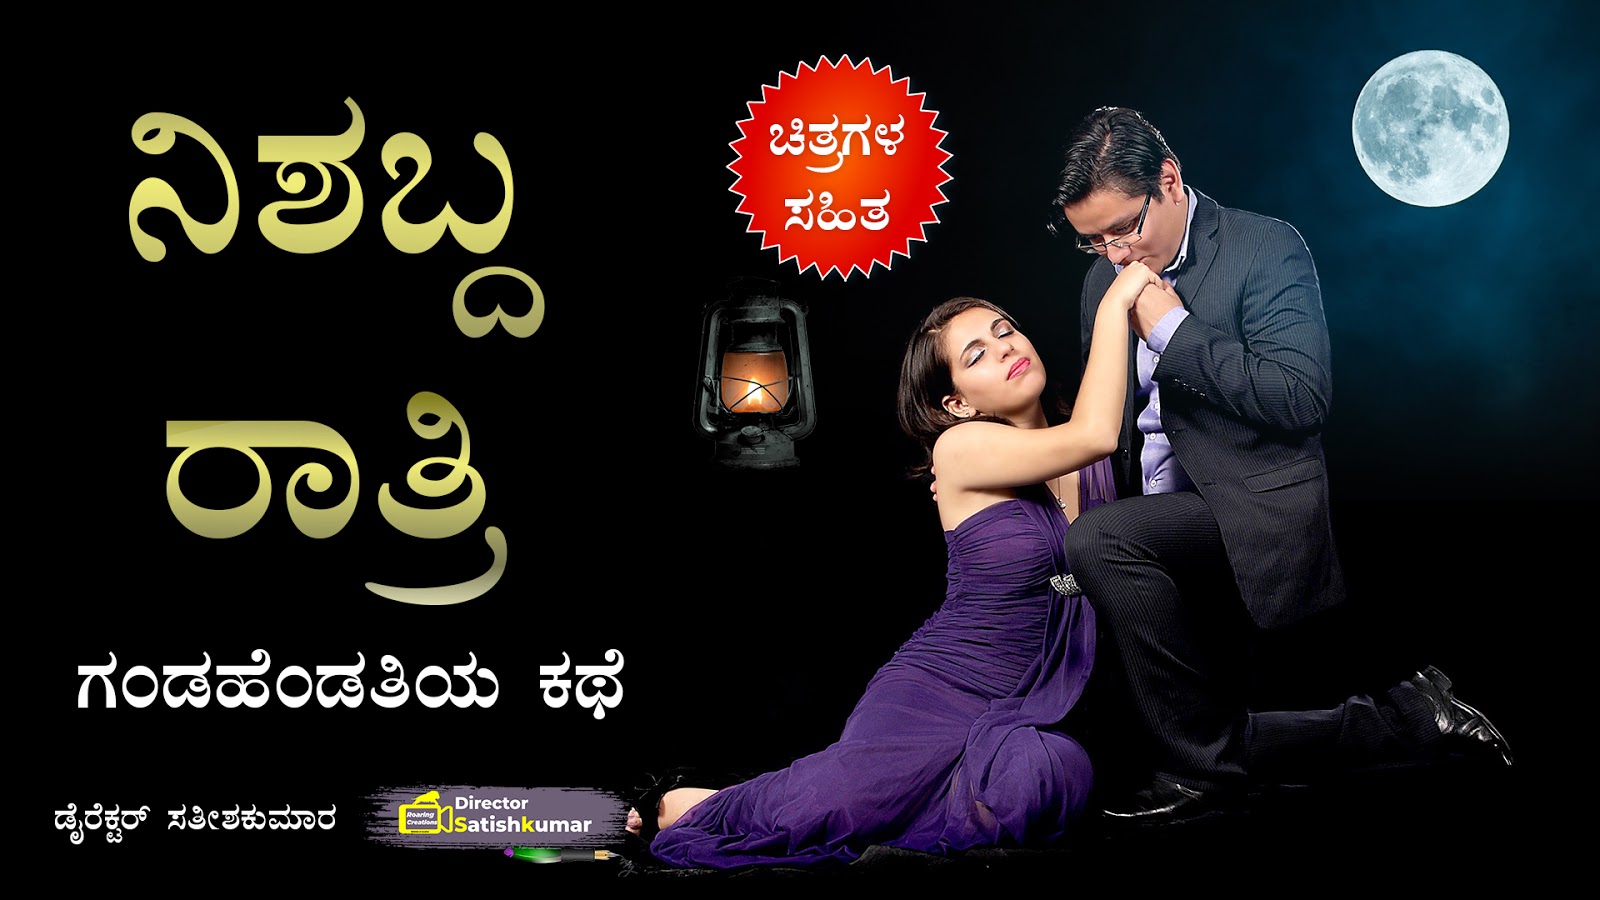 ನಿಶಬ್ದ ರಾತ್ರಿ : ಗಂಡಹೆಂಡತಿಯ ಕಥೆ - Romantic Love story of Husband and Wife in Kannada